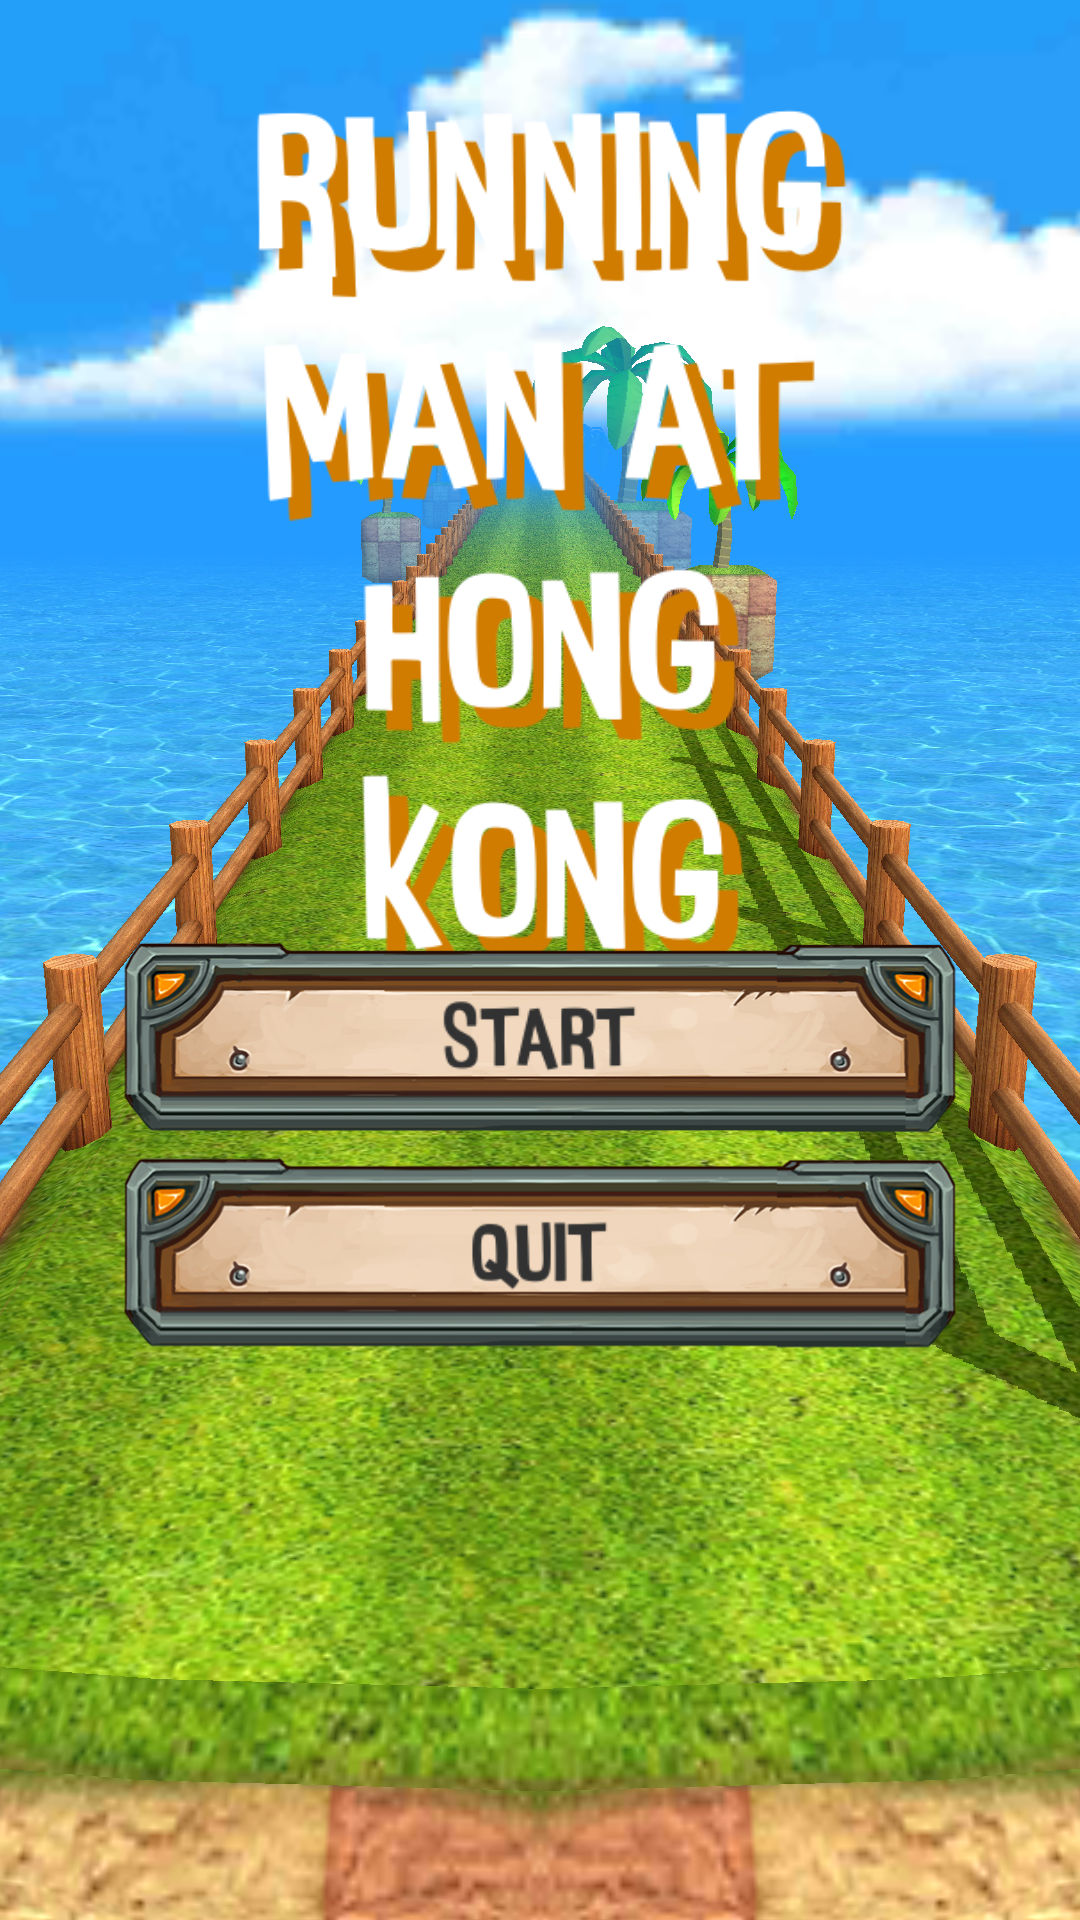 Screenshot 1 of Running Man at Hong Kong ฉันวิ่งกับฮ่องกง 1.2